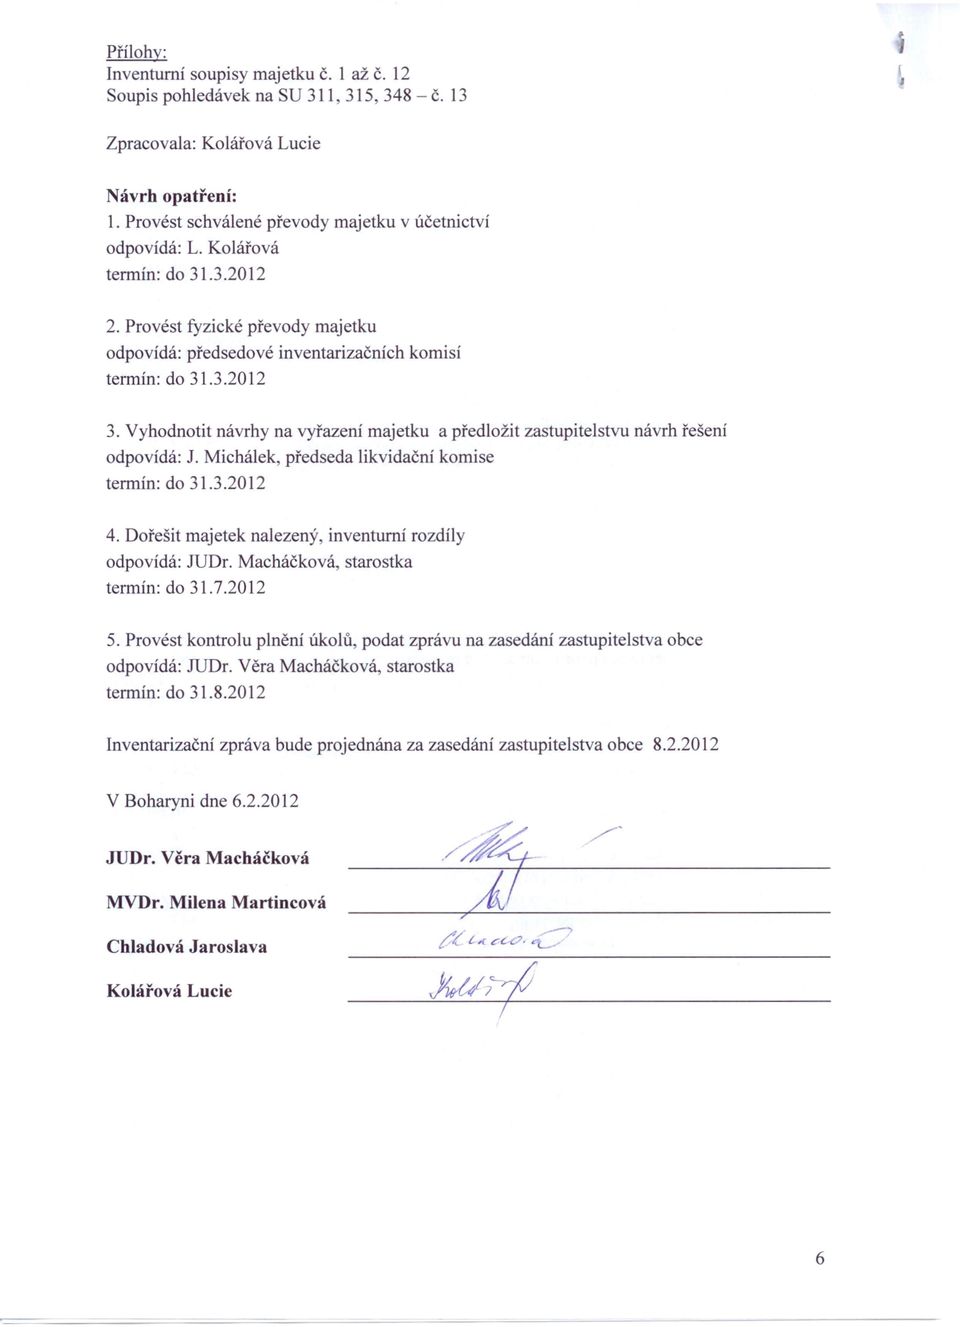 Vyhodnotit návrhy na vyřazení majetku a předložit zastupitelstvu návrh řešení odpovídá: J. Michálek, předseda likvidační komise termín: do 31.3.2012 4.